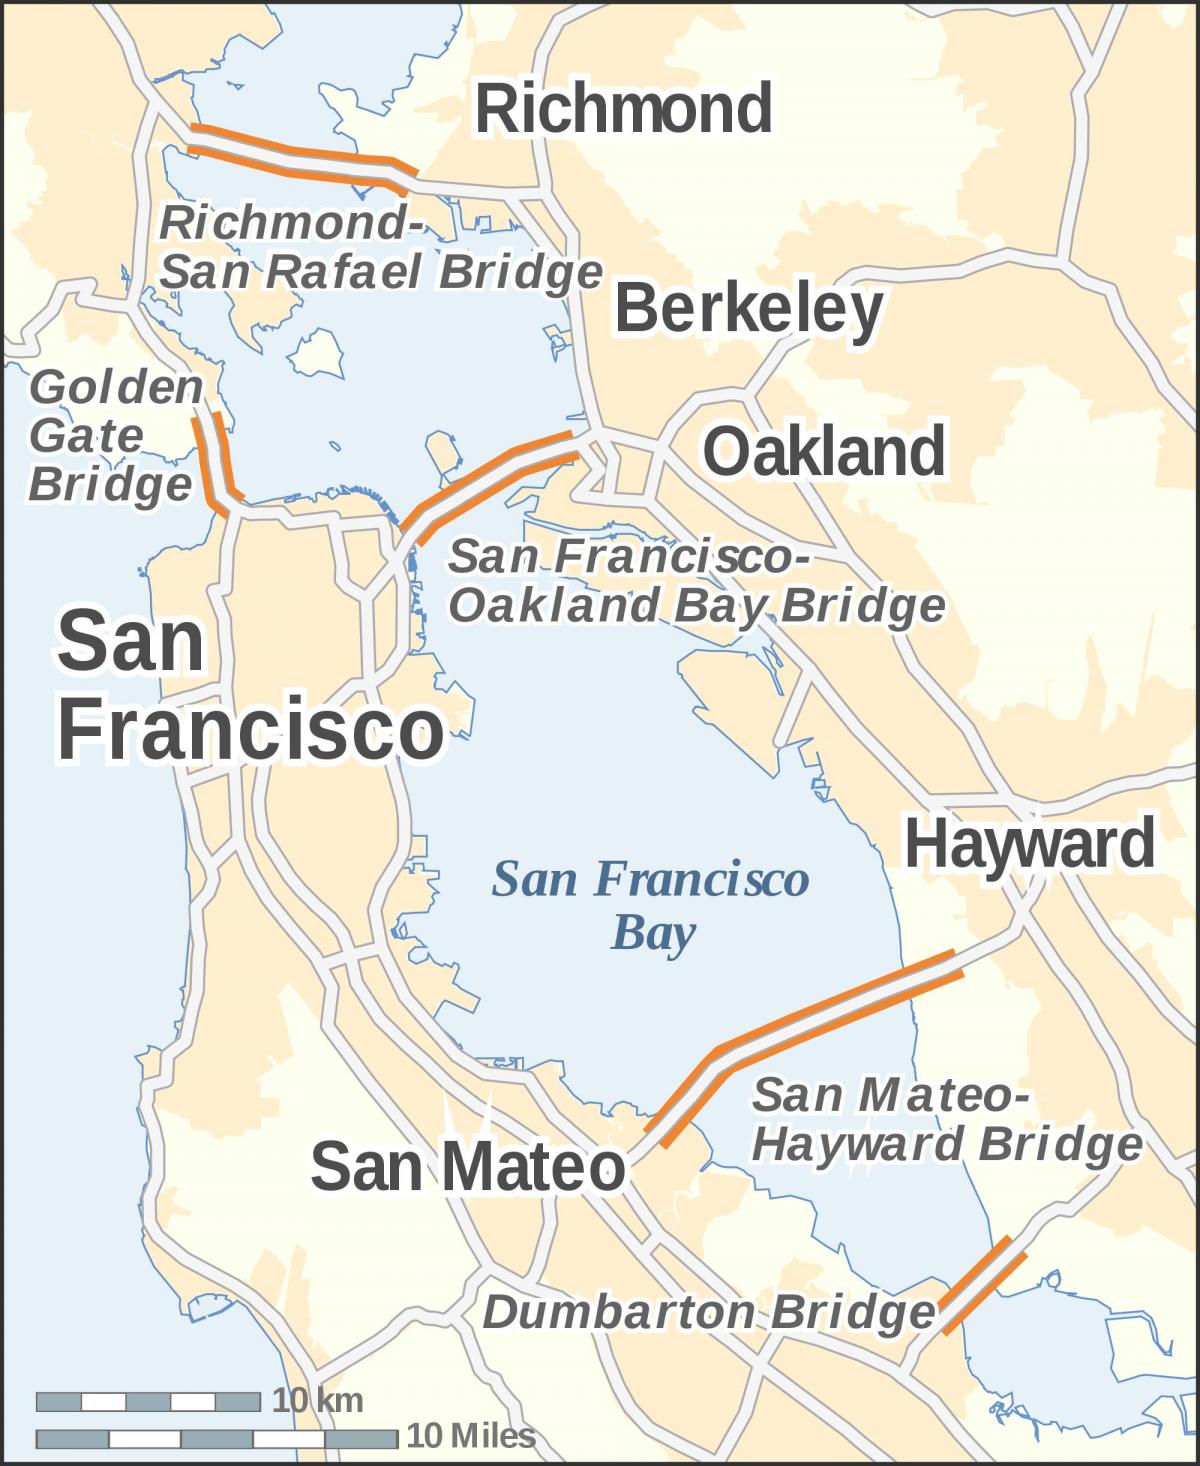 kat jeyografik nan San Francisco golden gate pon, dan vise